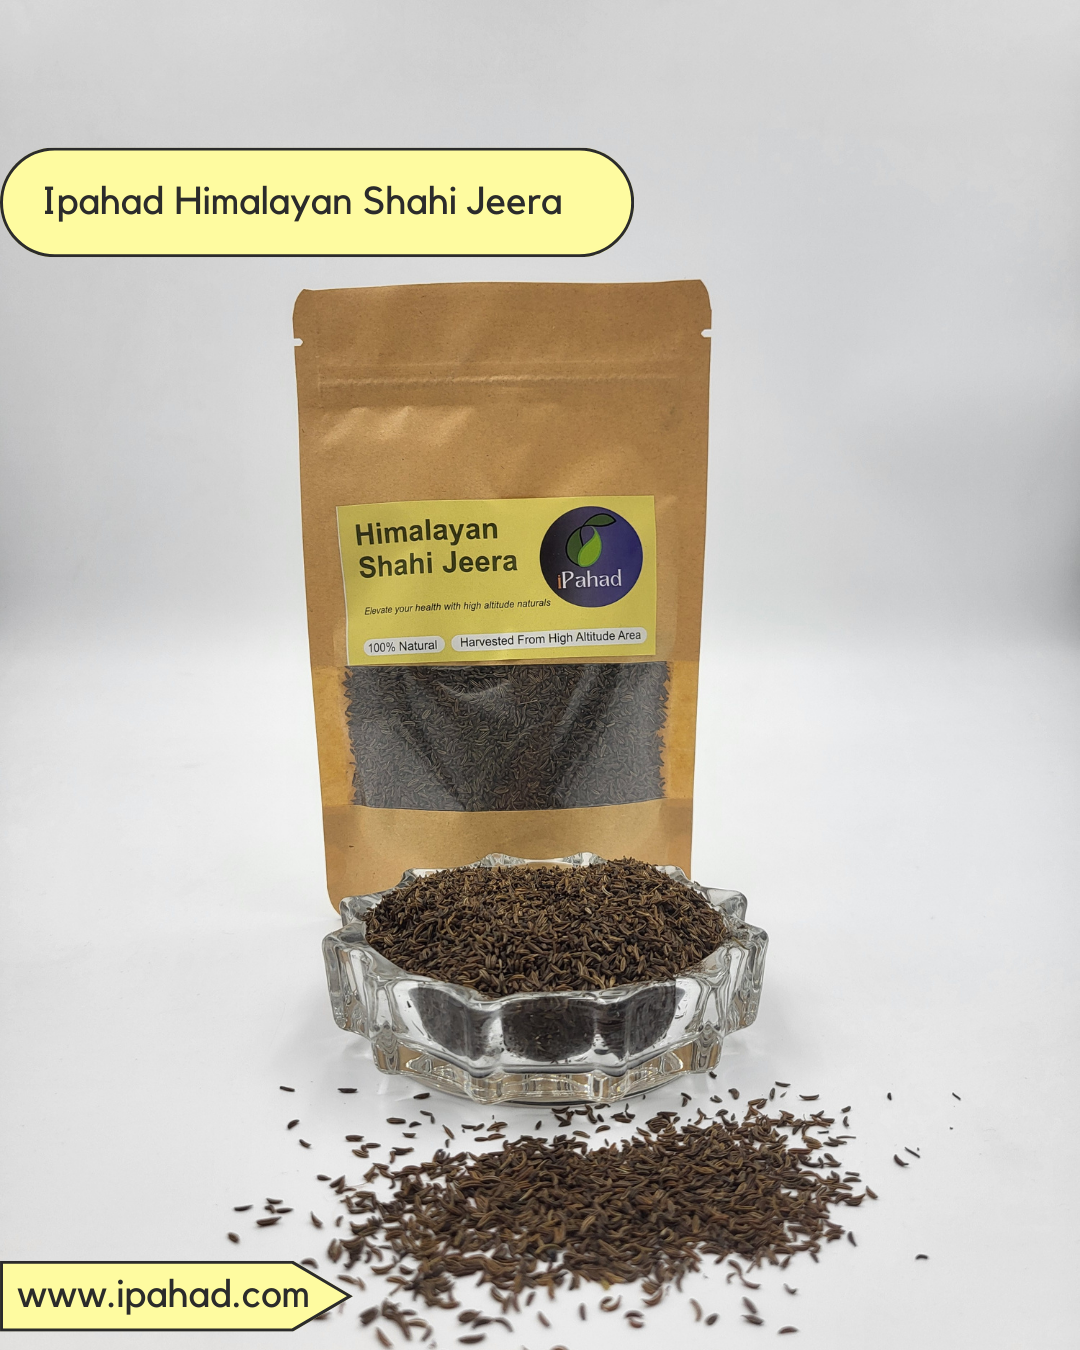 Himalayan Shahi Jeera (Caraway Seeds)